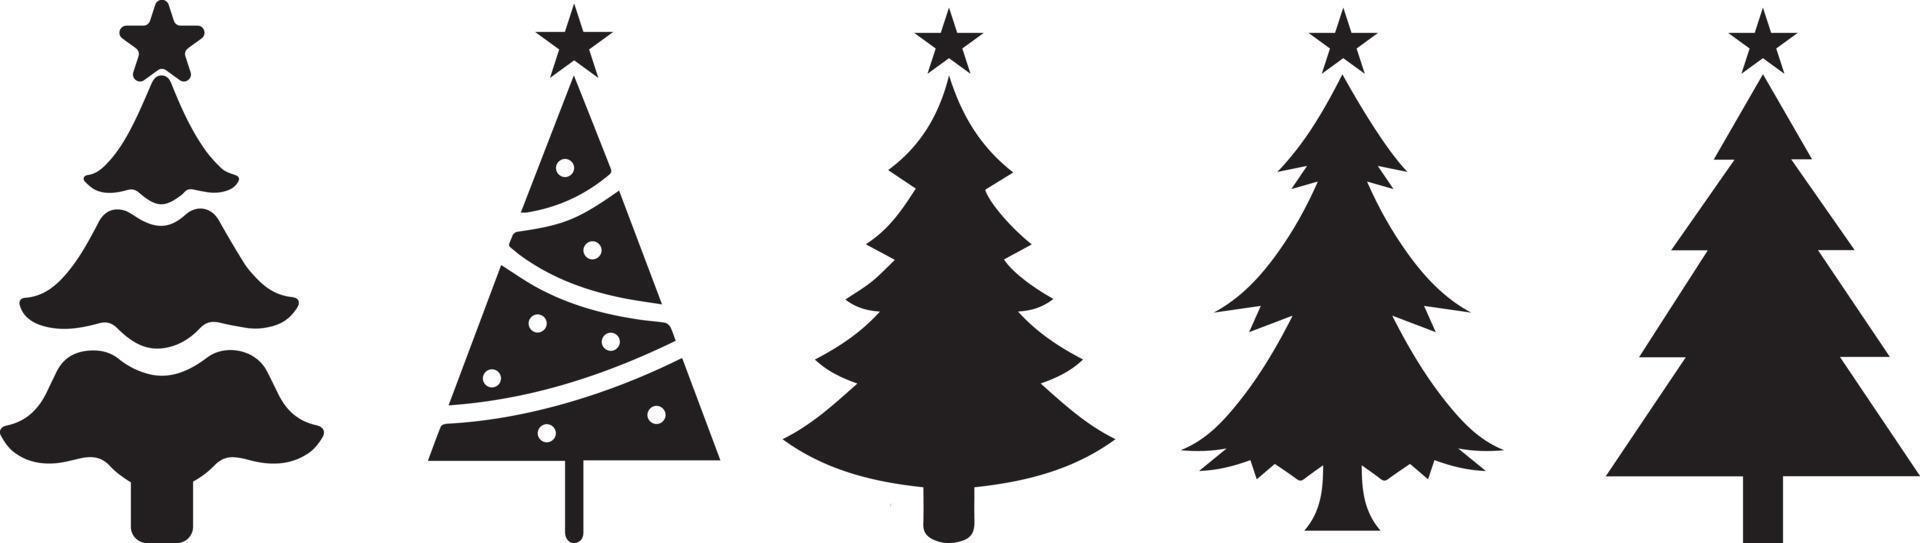 Natale albero silhouette con decorazioni. Natale alberi sfondo. isolato Natale albero icona con stella. inverno alberi collezione per vacanza natale e nuovo anno vettore